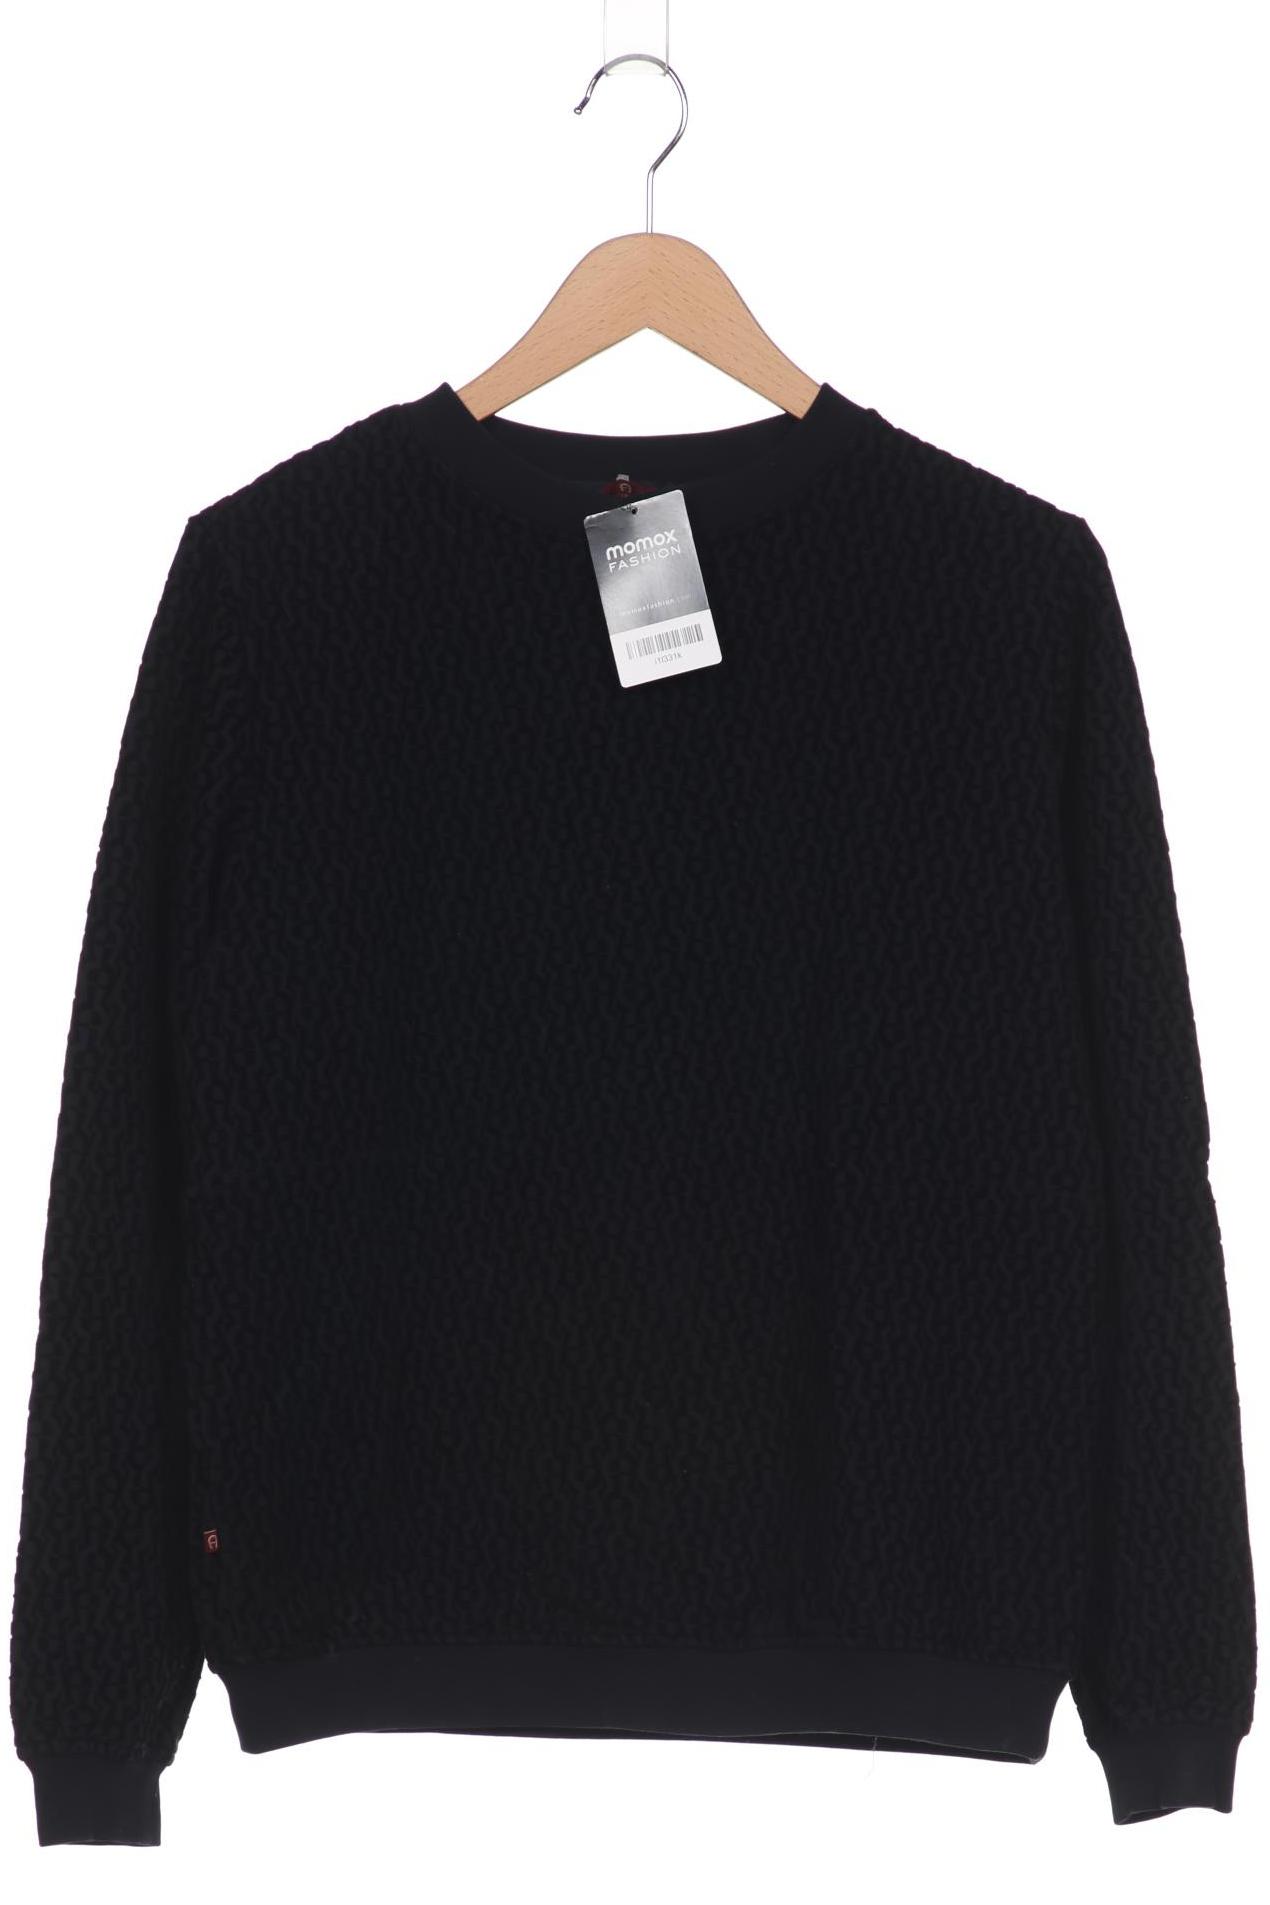 Aigner Damen Sweatshirt, schwarz, Gr. 38 von aigner